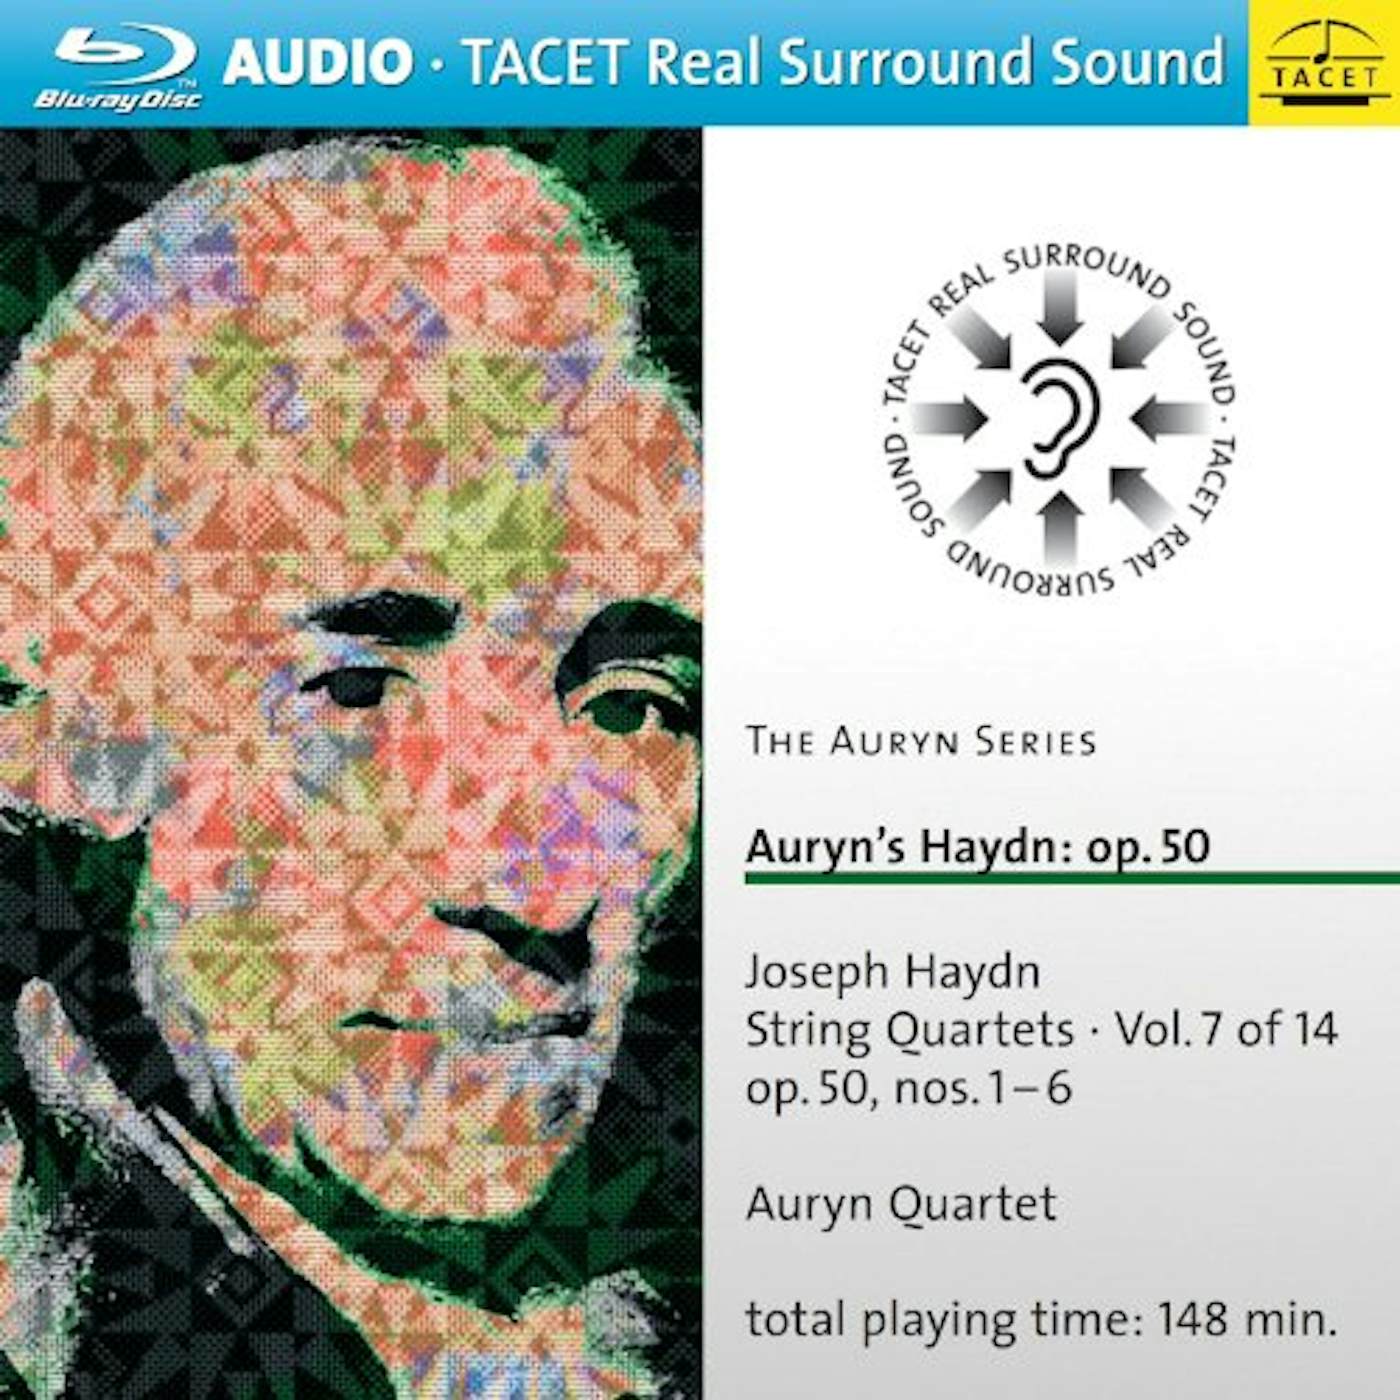 AURYN SERIES VOL 7: AURYN'S HAYDN OP. 50 Blu-ray Audio